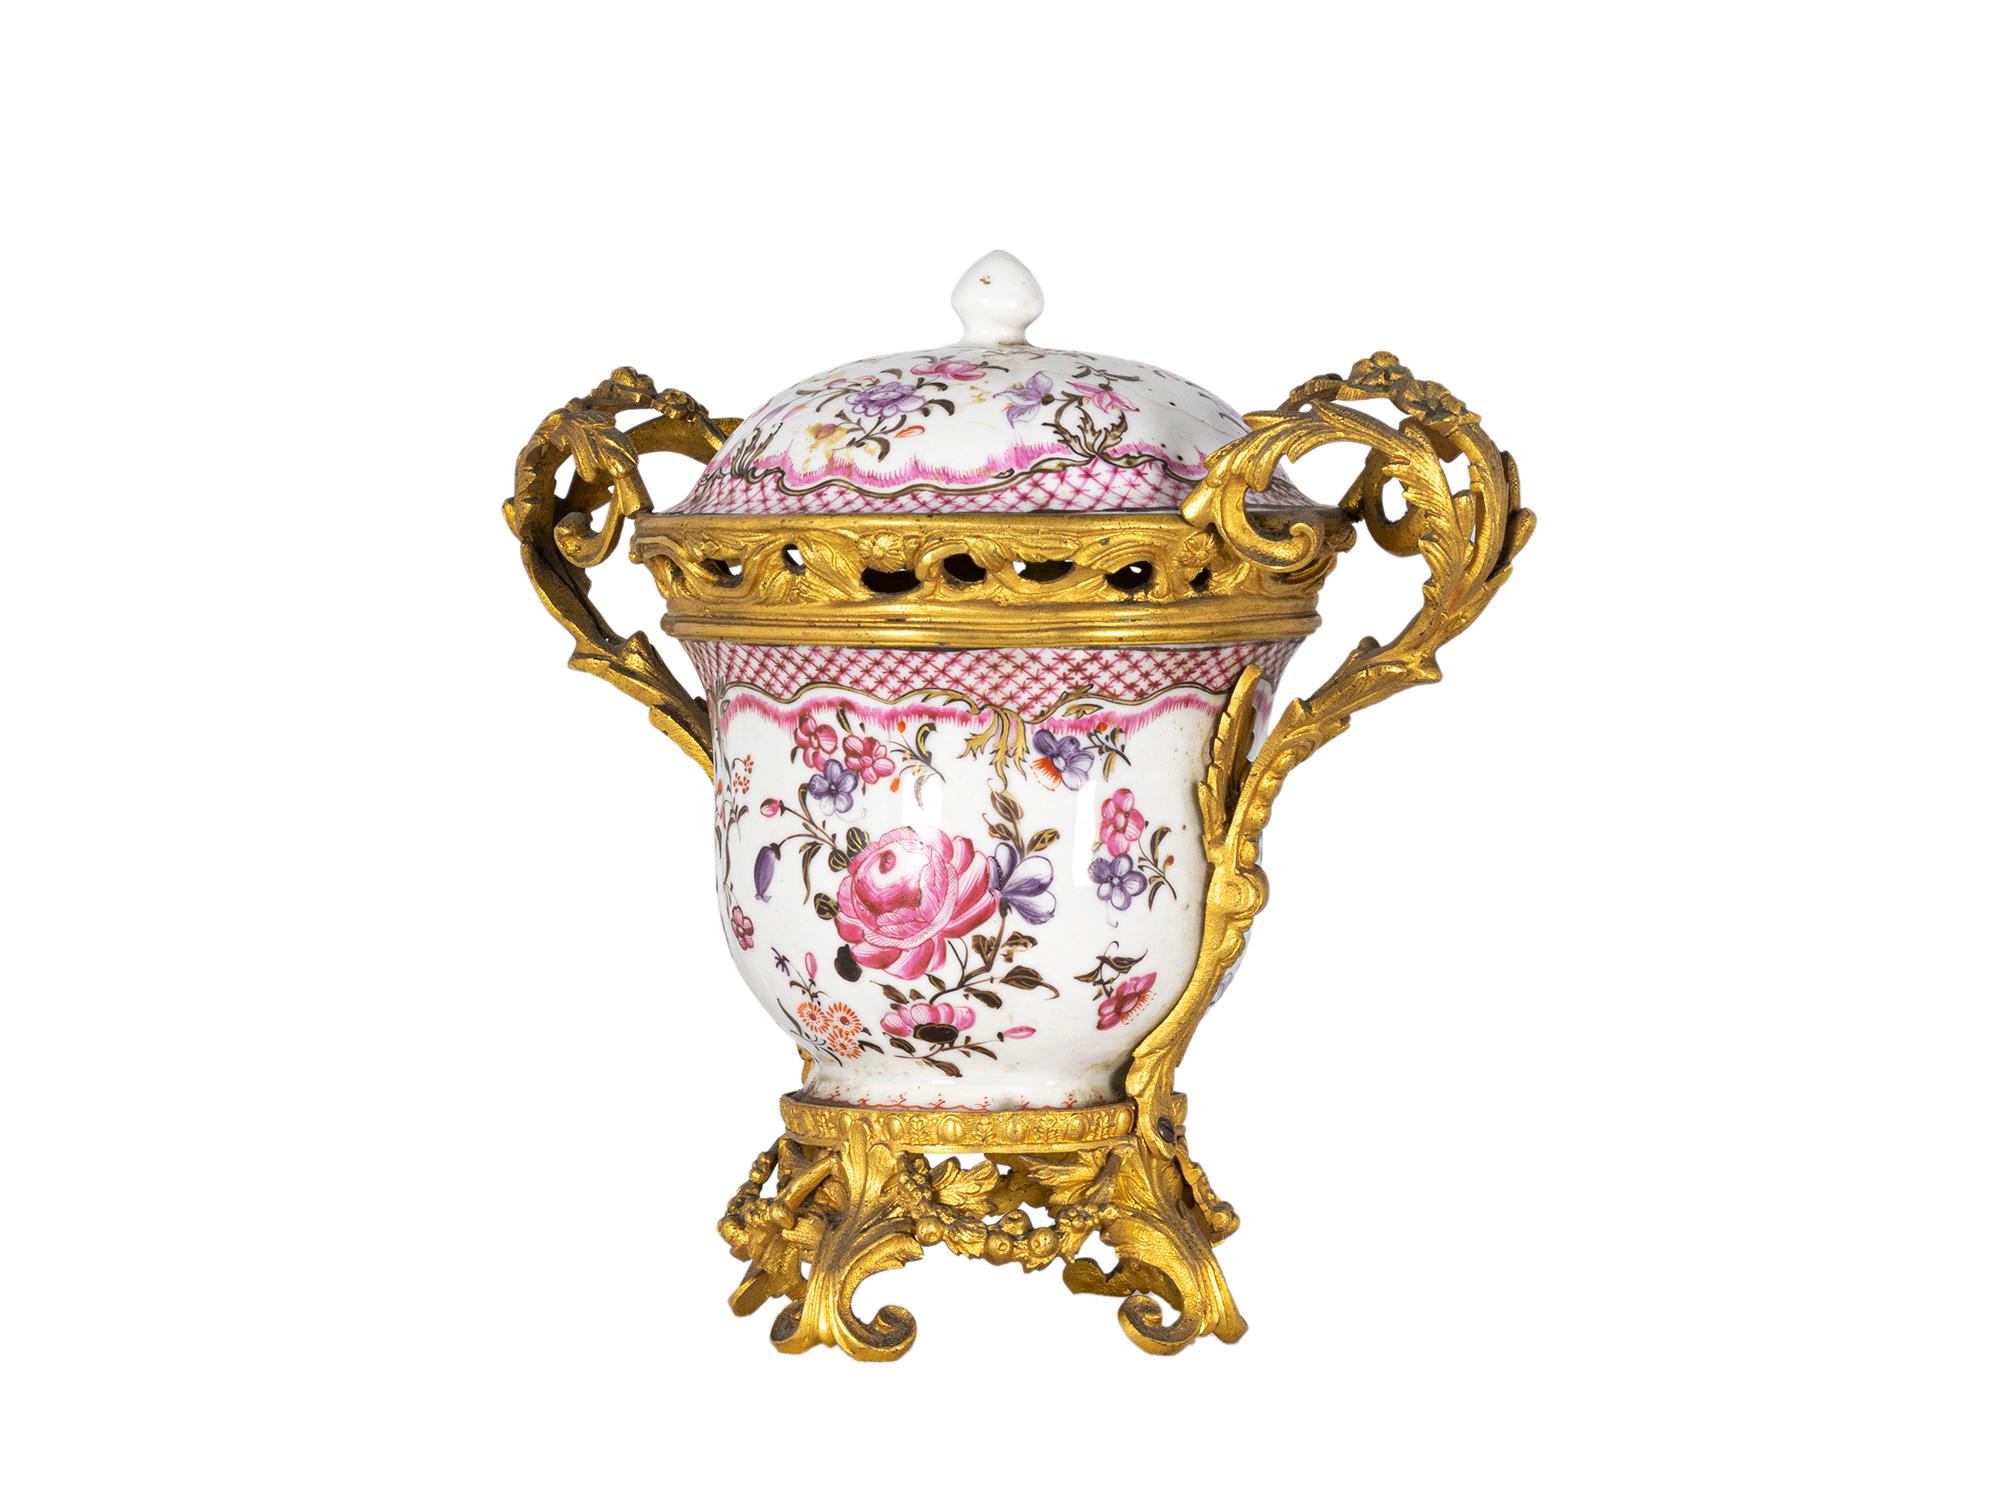 Eine einzigartige, sehr spezielle 18. Jahrhundert chinesische famille rose India Company ormolu Bronze montiert Terrine Porzellan.
Chinesisches Porzellan der Portugiesisch-Indischen Kompanie aus der Zeit der Qianlong-Herrschaft (1736 bis 1795).
Das